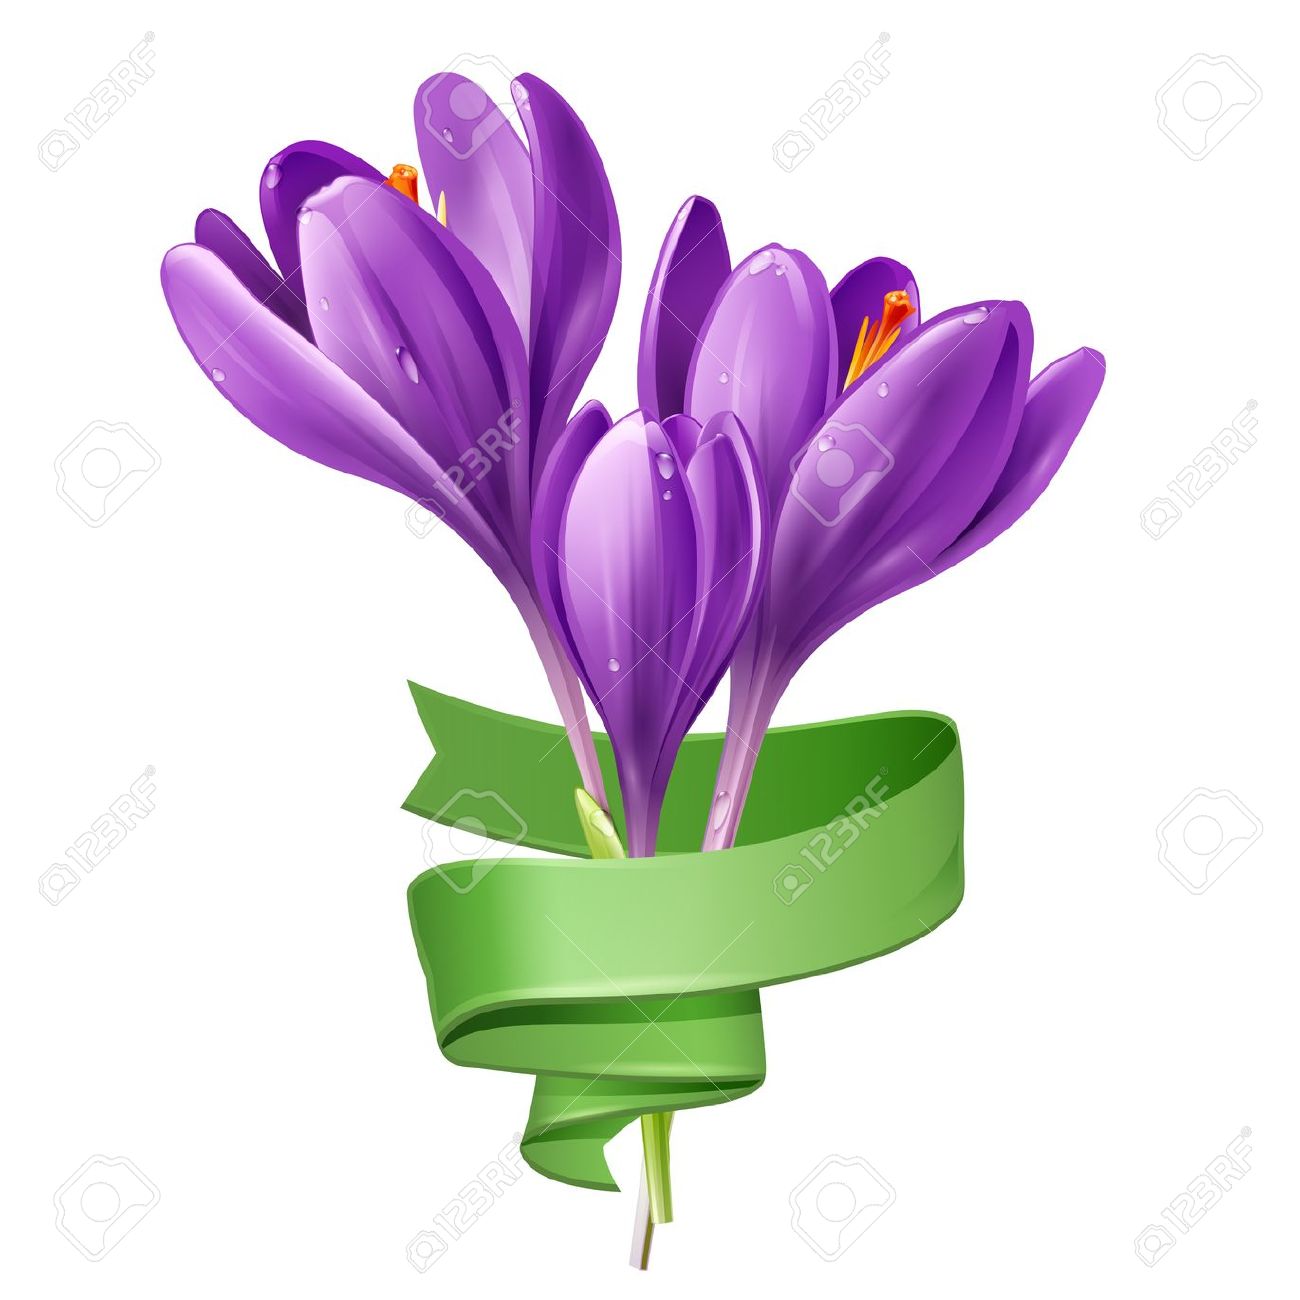 saffron flower clipart 20 free Cliparts | Download images ...